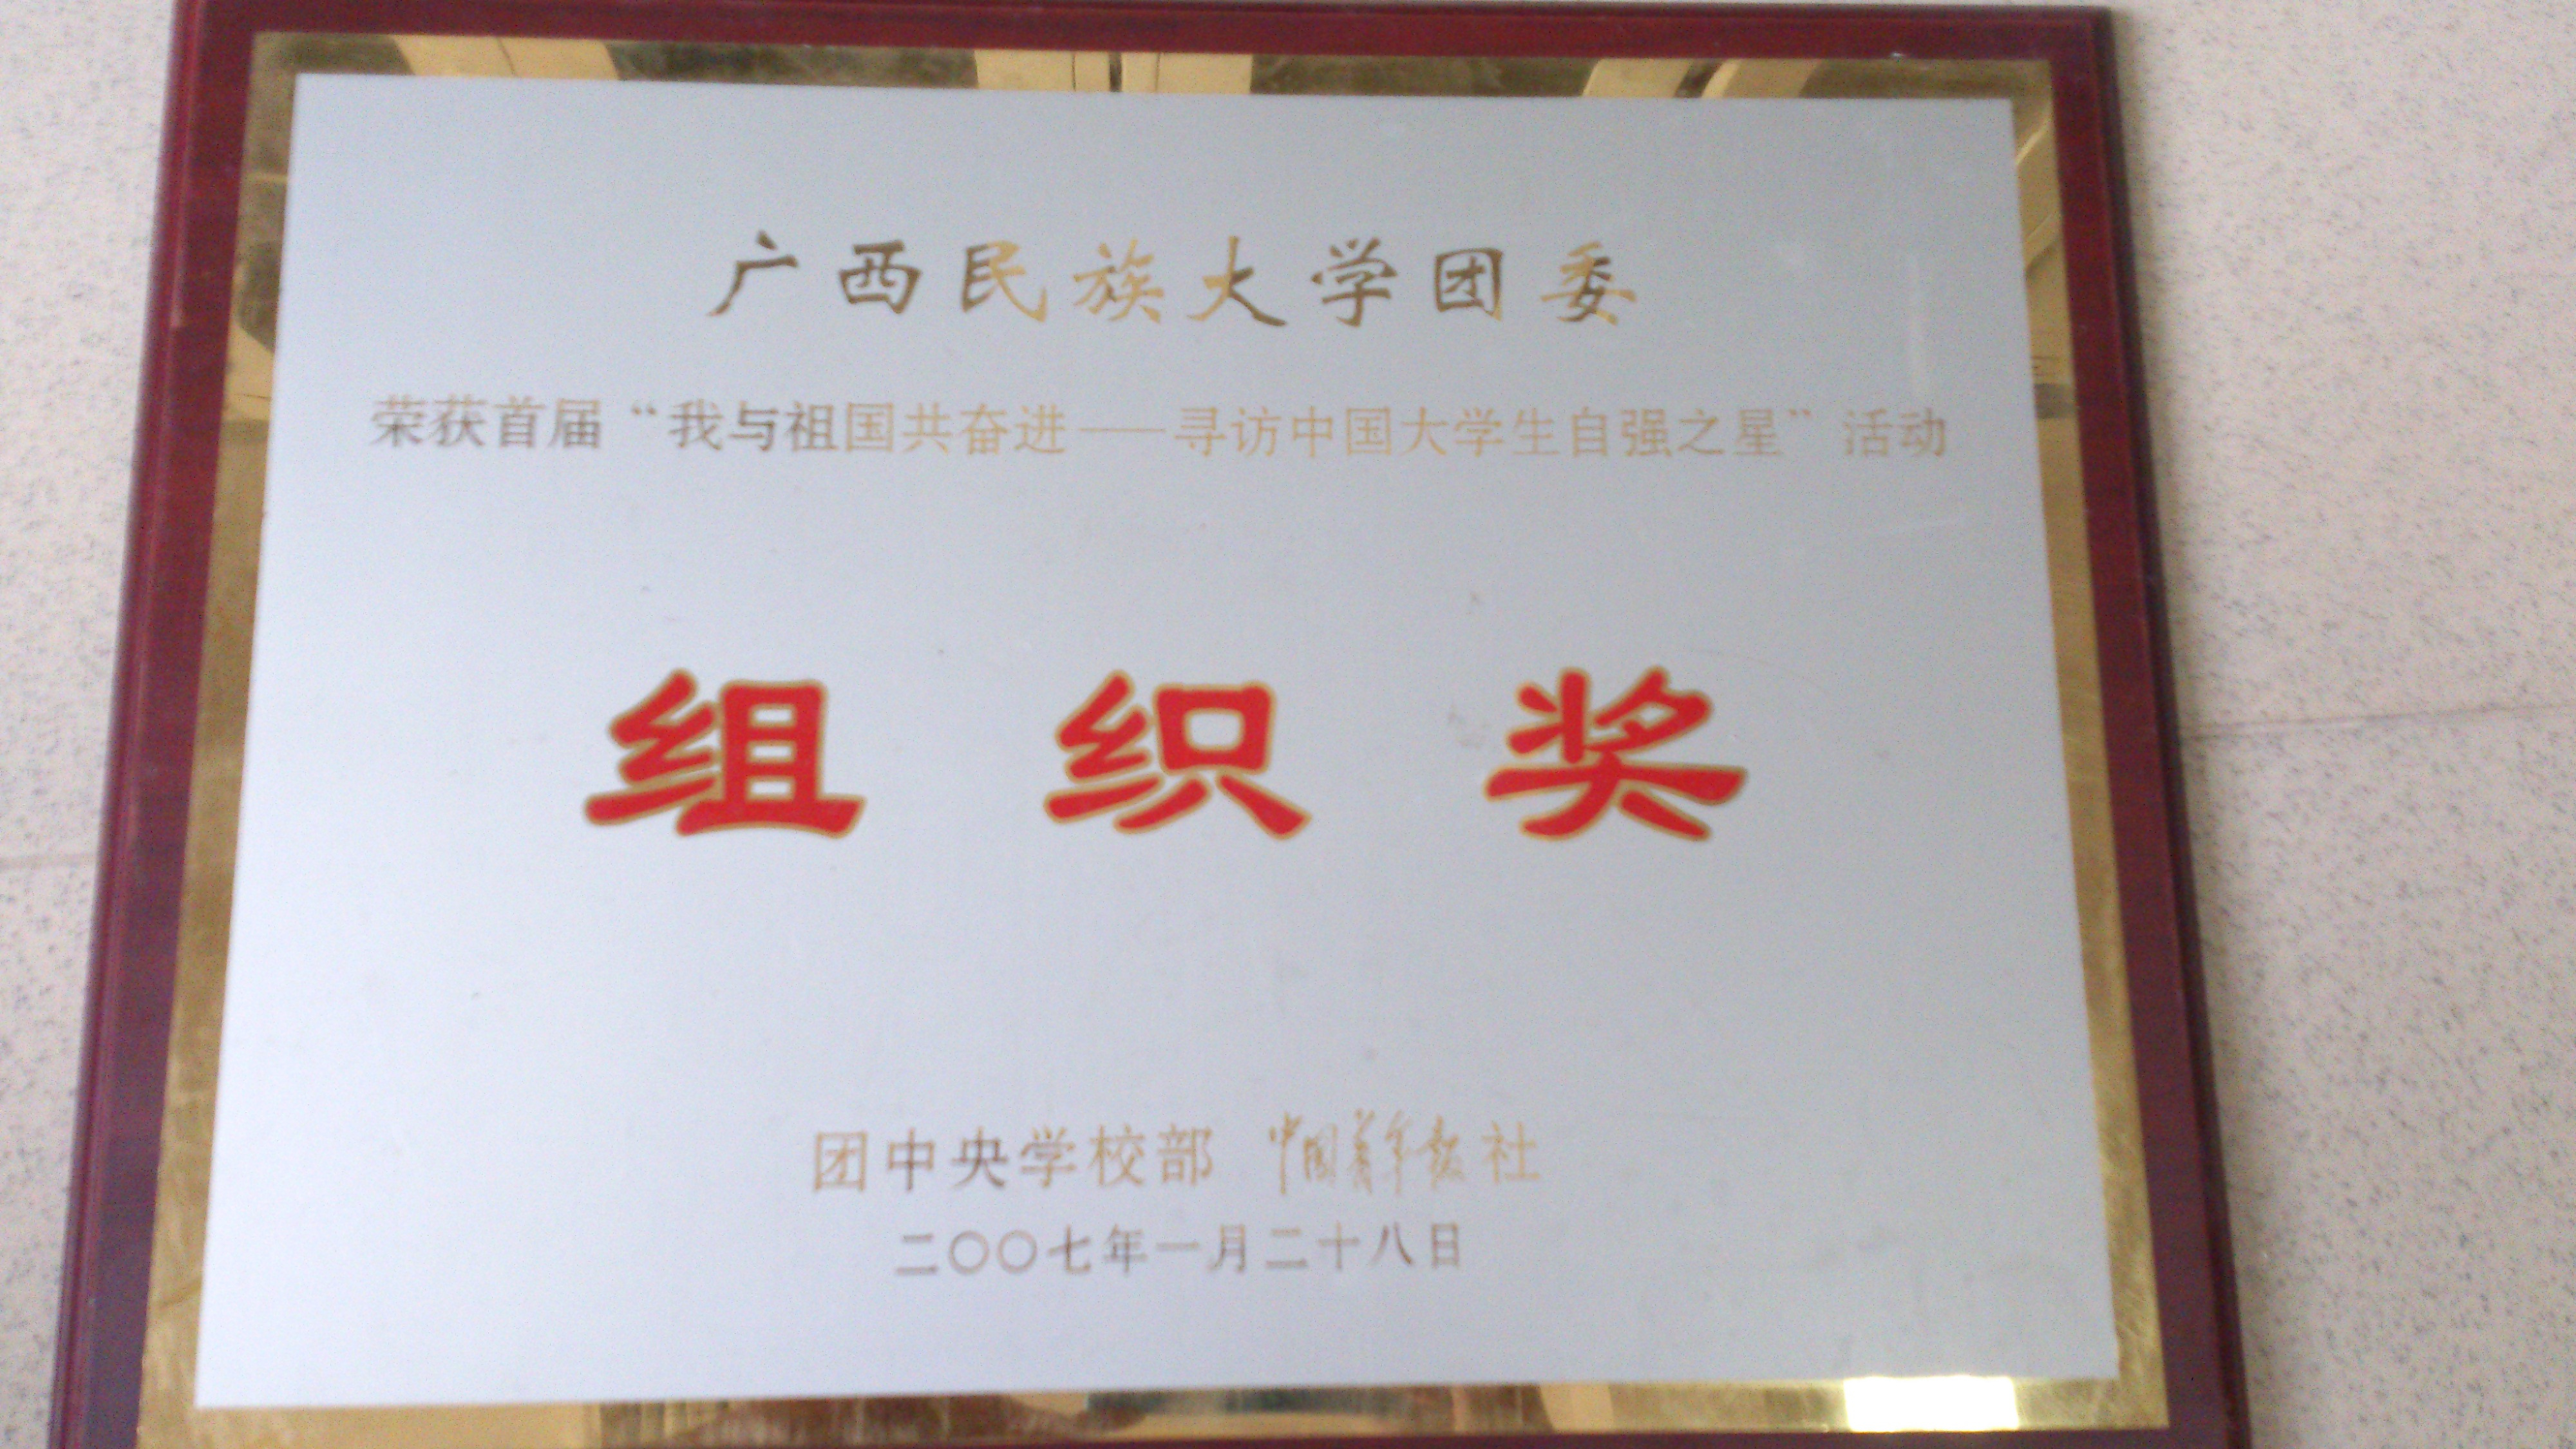 2007年 国家级 “我与祖国共奋进——寻访中国大学生自强之星”活动 组织奖